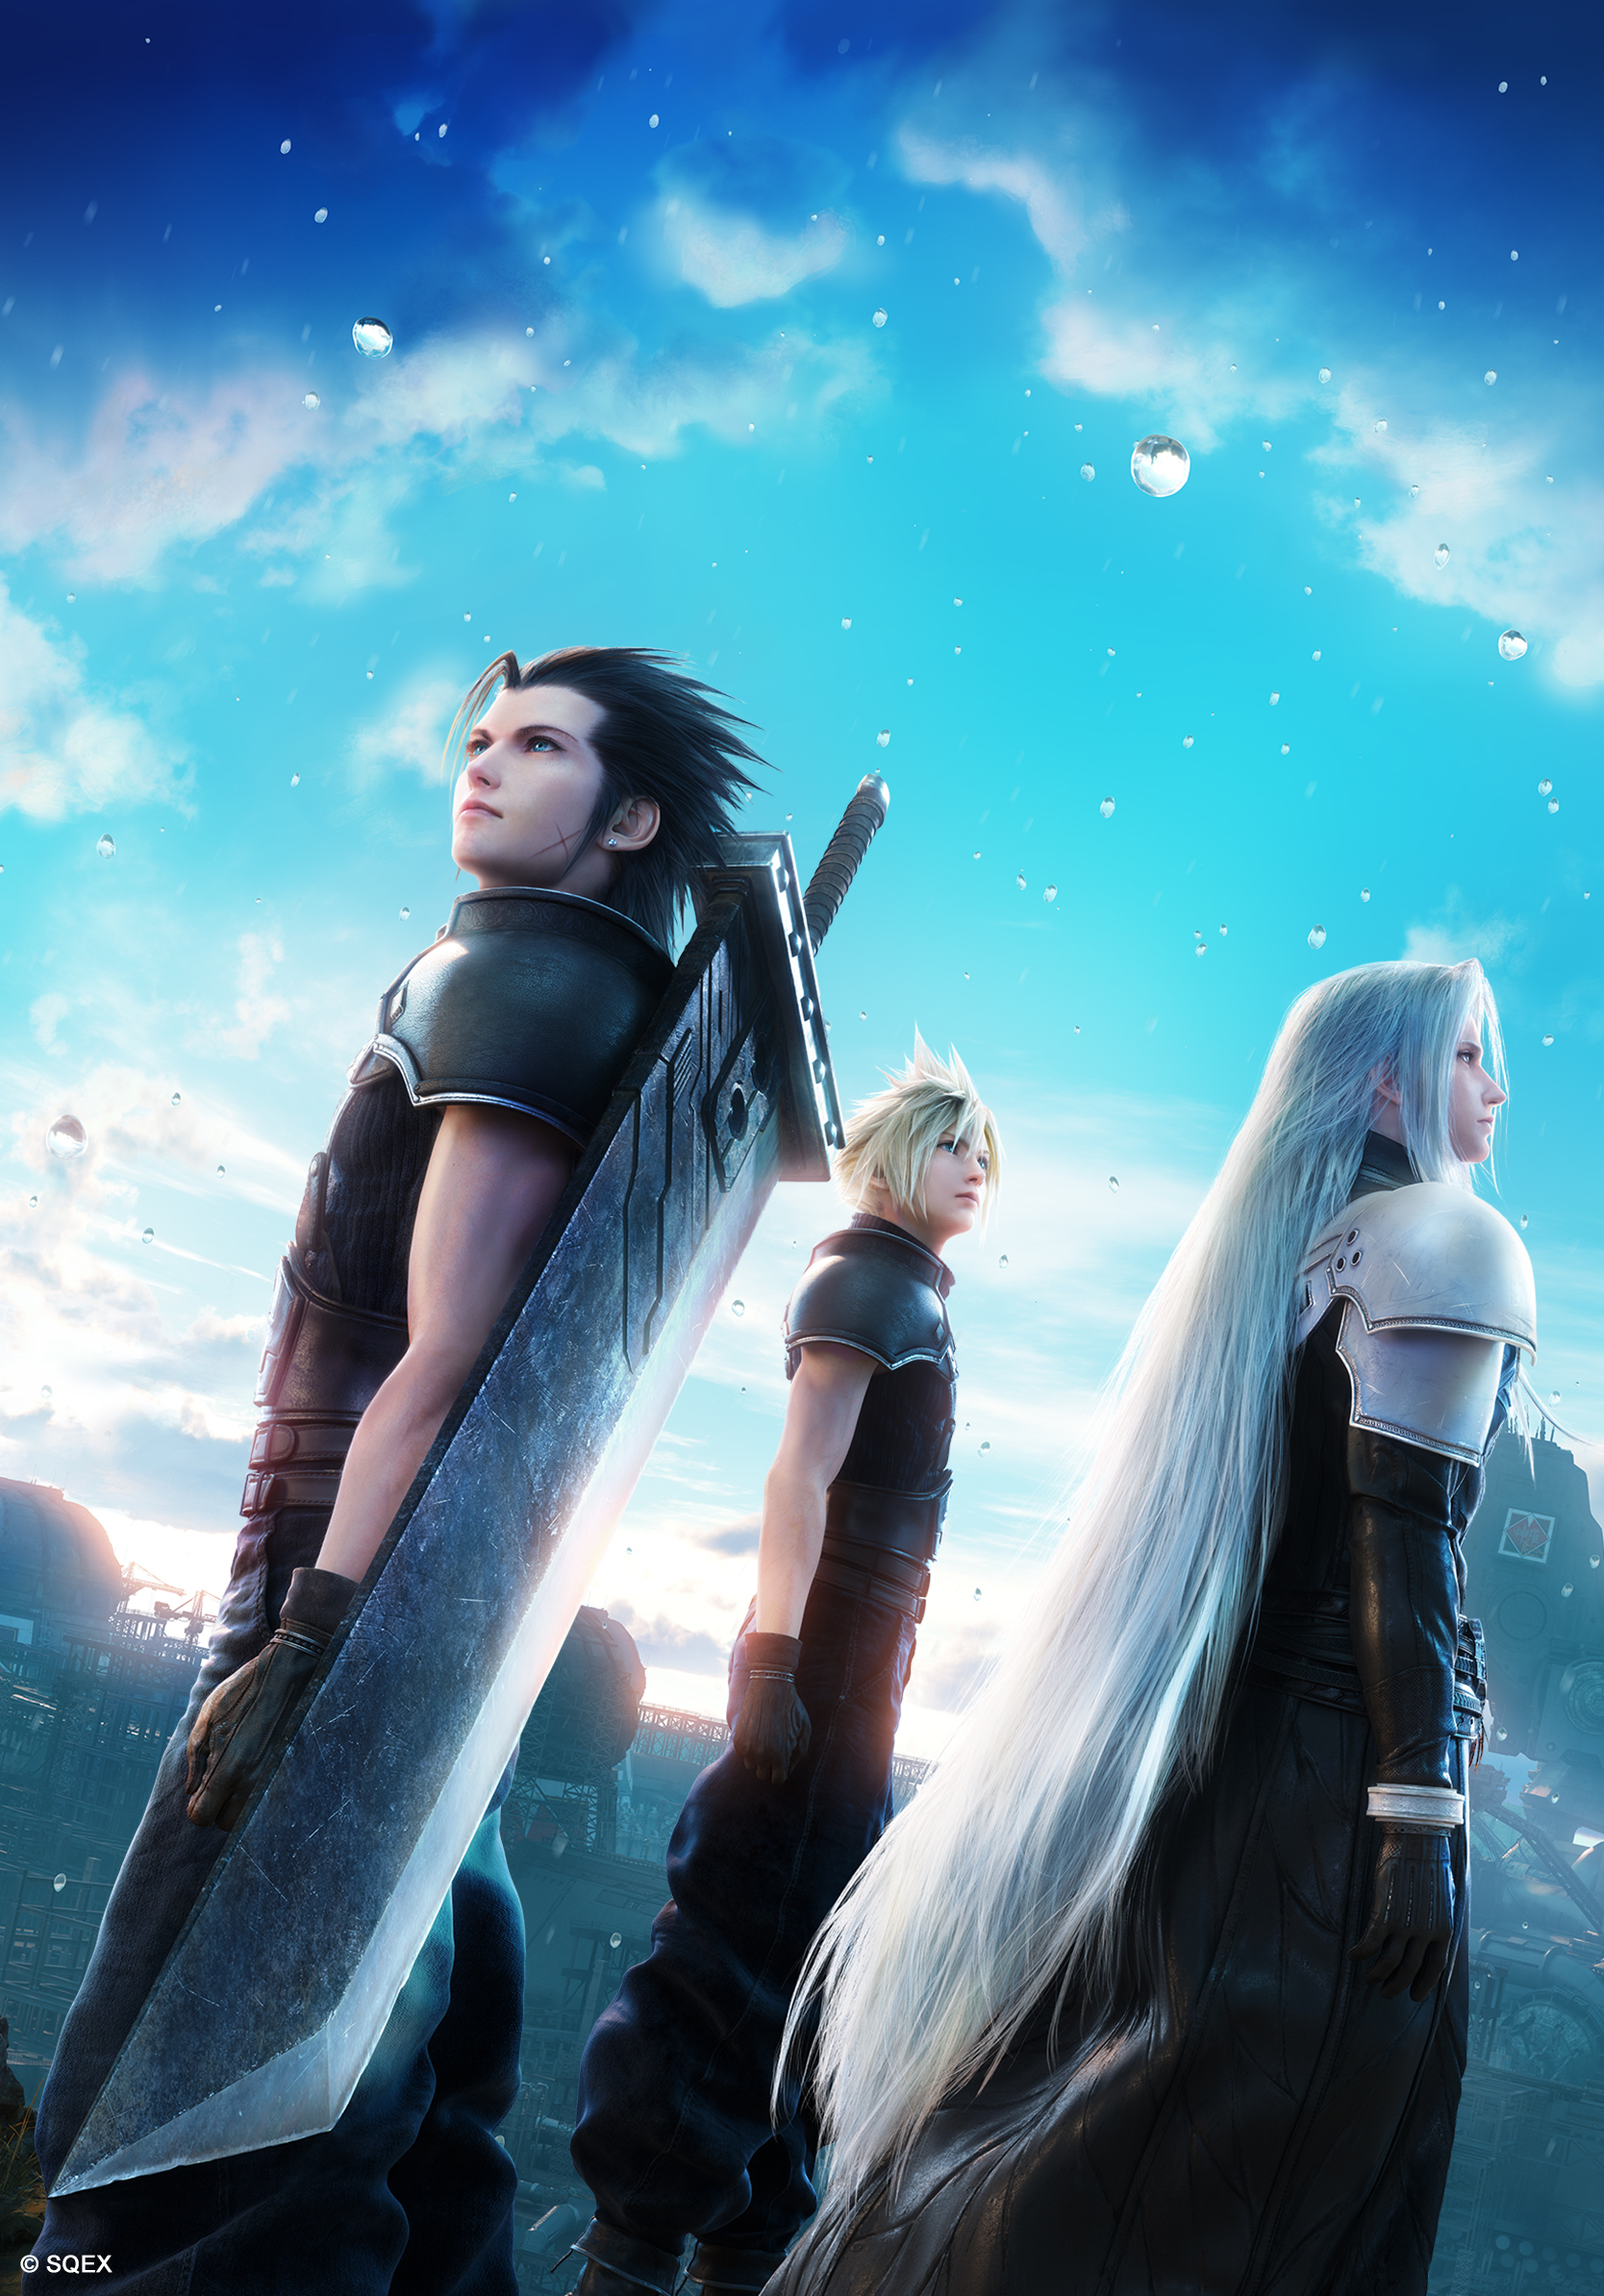 Reservar Crisis Core Final Fantasy VII Reunion en GAME viene con